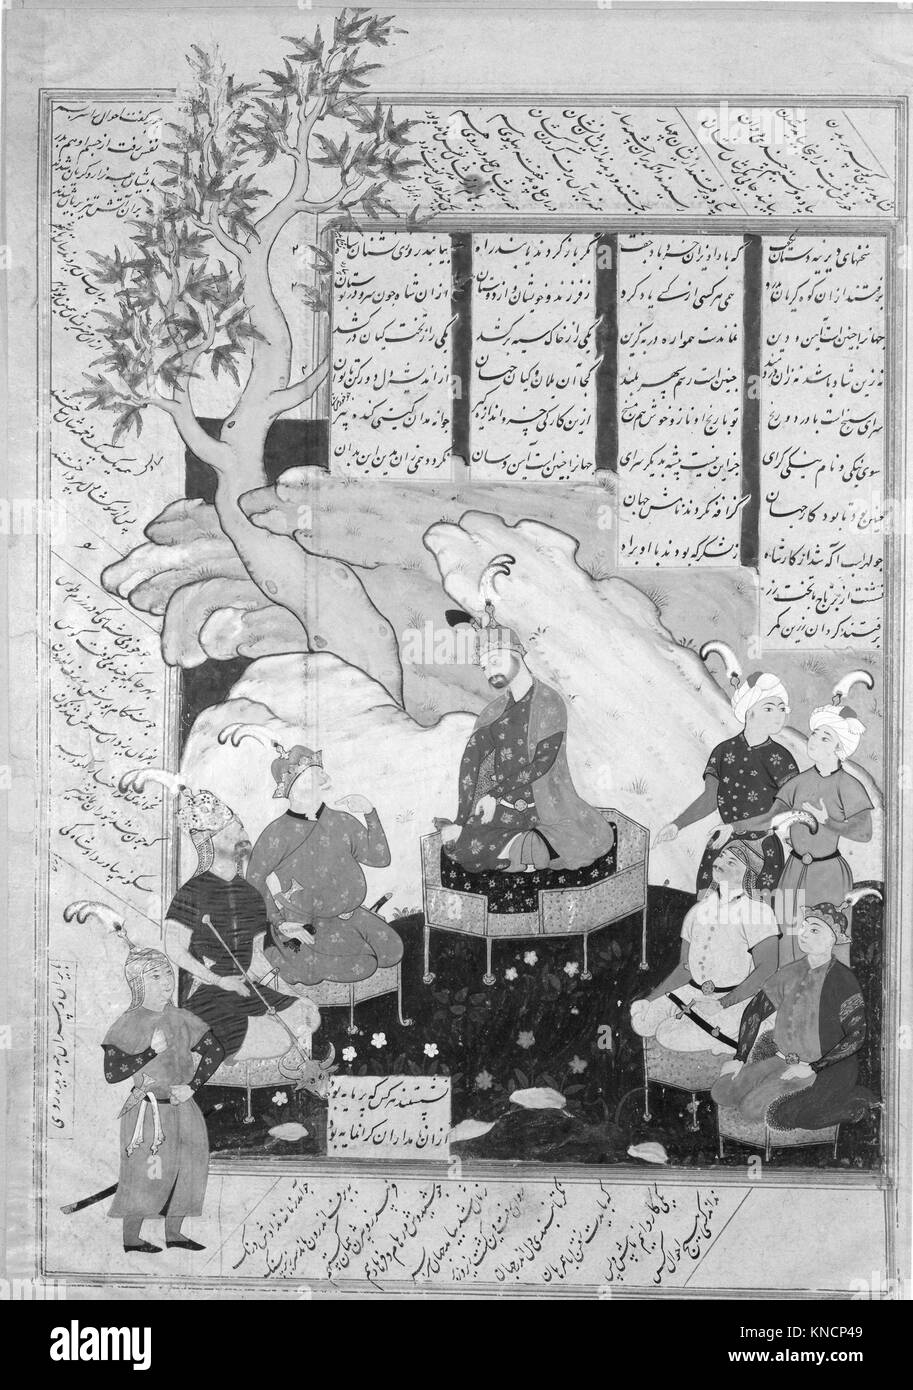 Luhrasp hört von der Rückkehr Paladine des verschwindenden Kai Khusrau, Folio aus einem shahnama (Buch der Könige) von Firdausi MET 174486 449020 Stockfoto